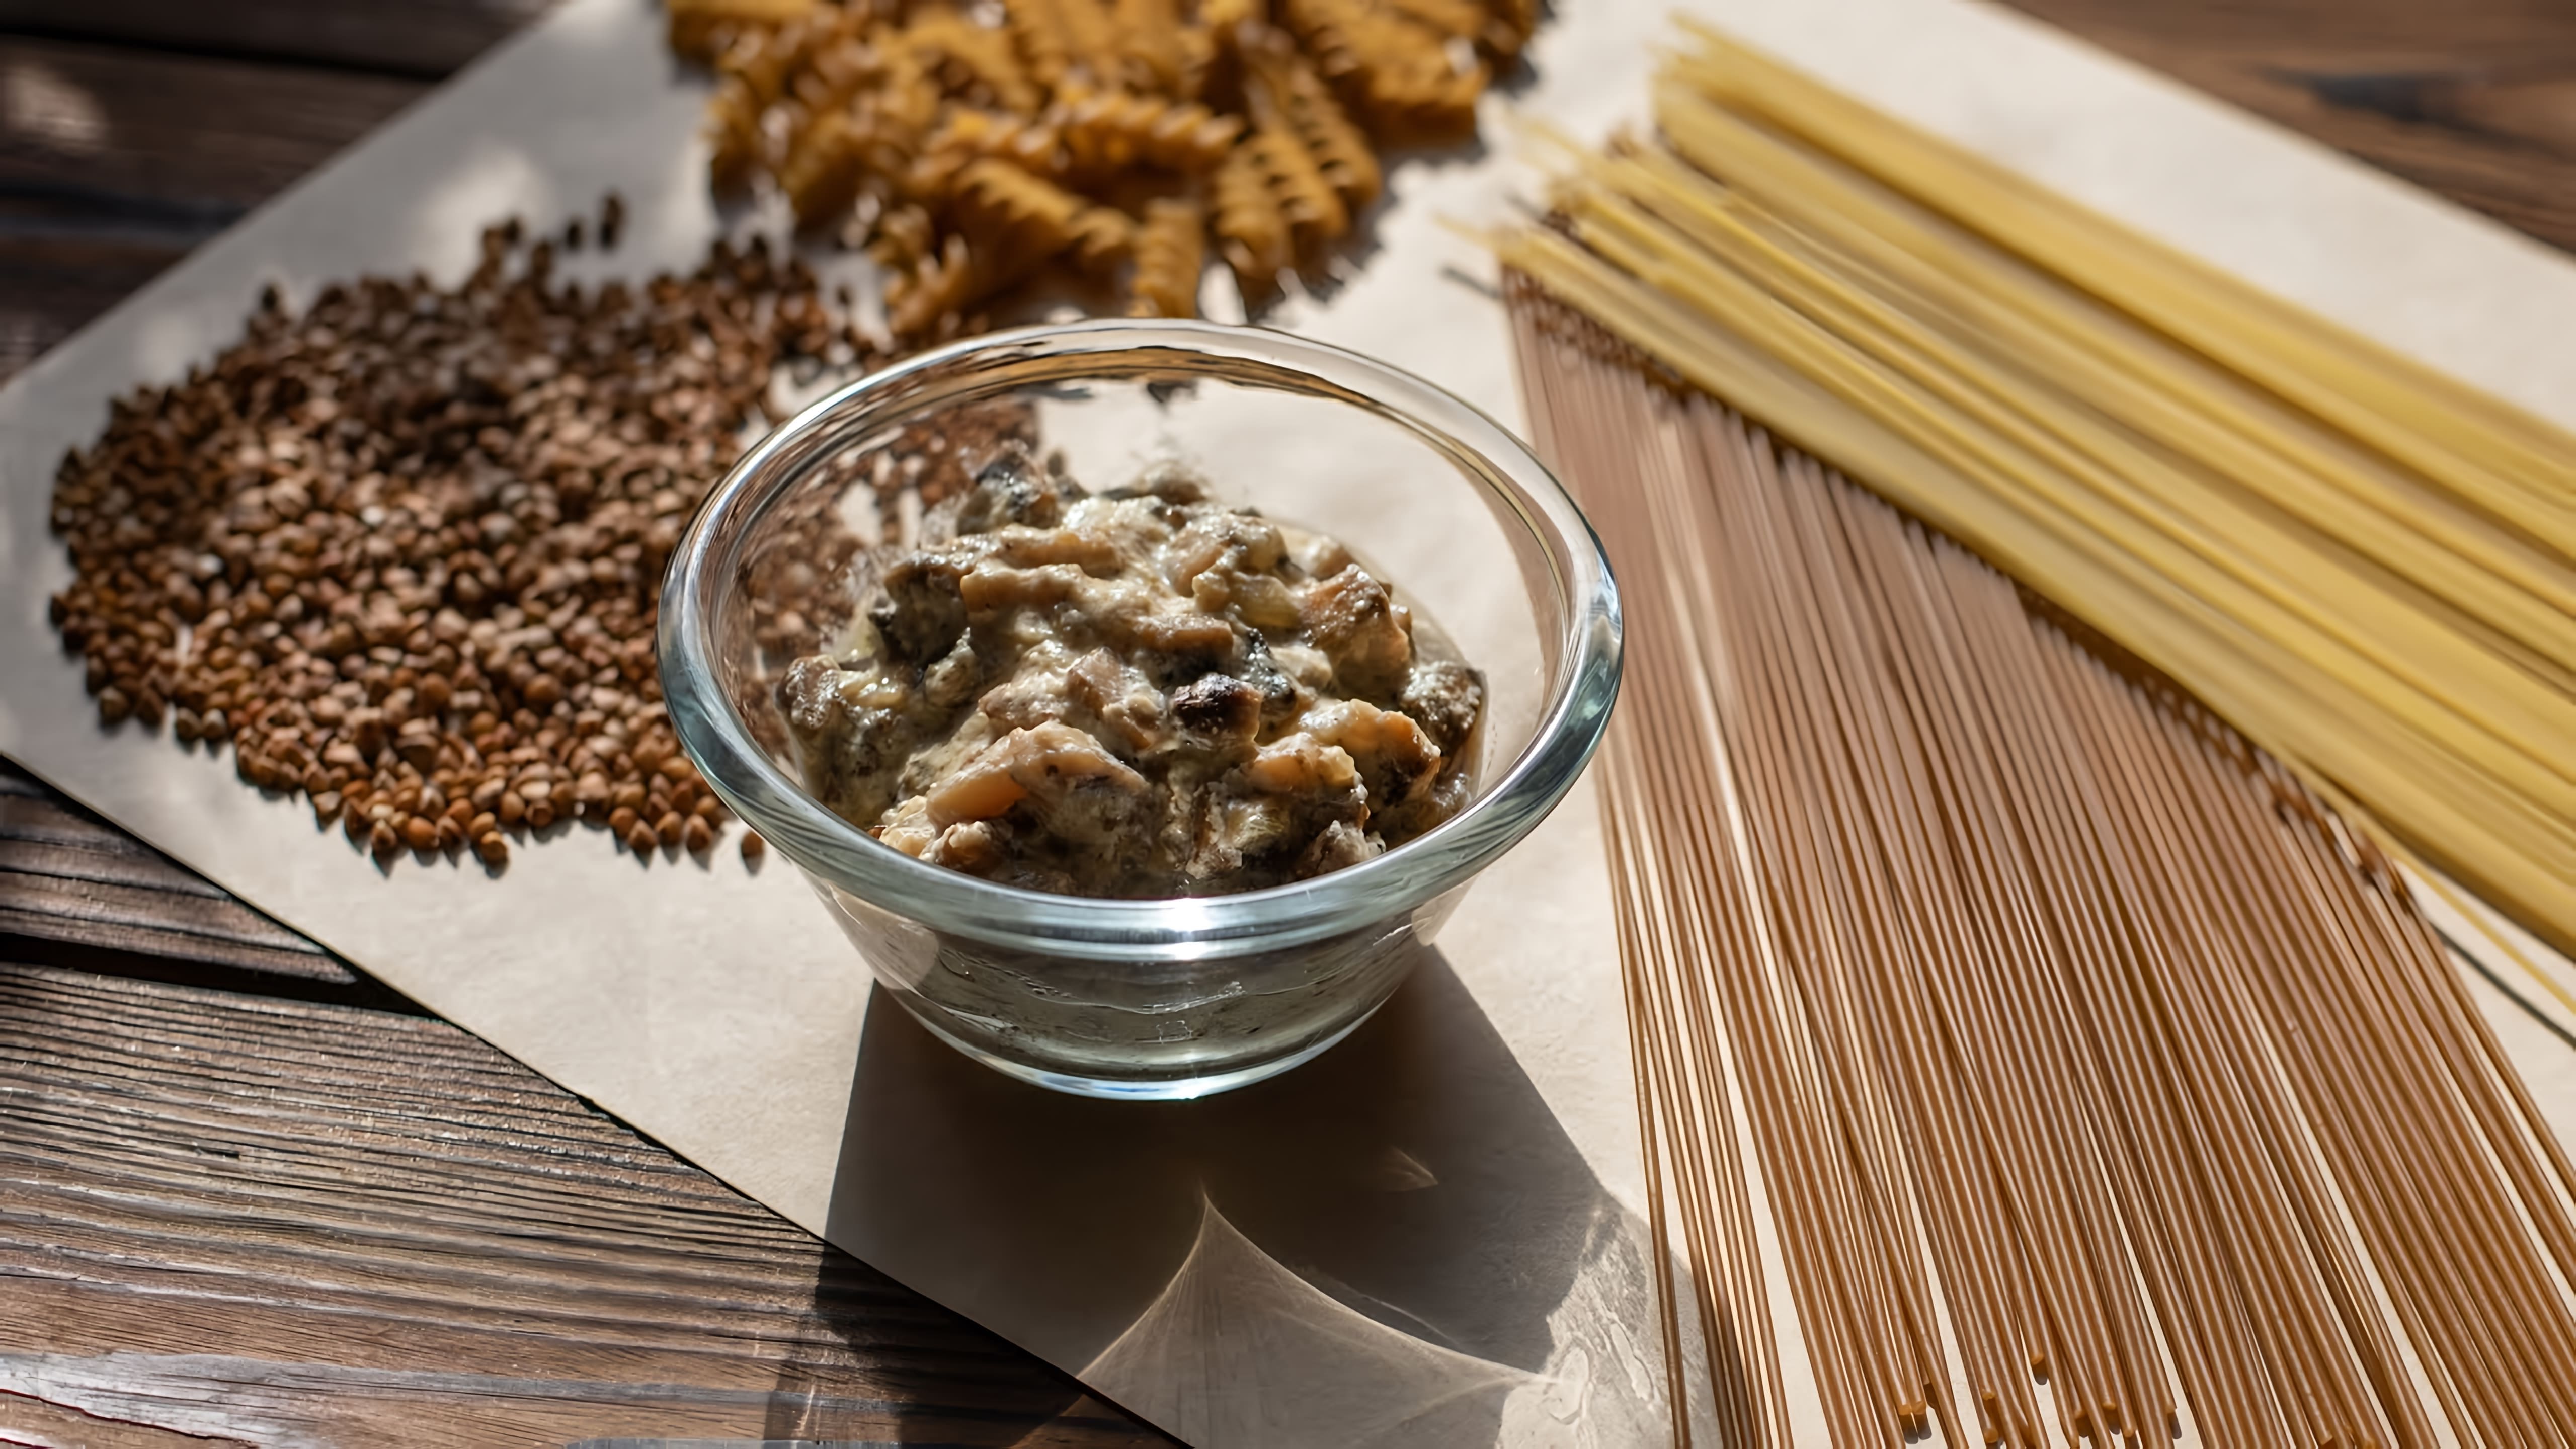 В этом видео-ролике будет показан рецепт приготовления грибного соуса из шампиньонов со сливками для вареников и спагетти